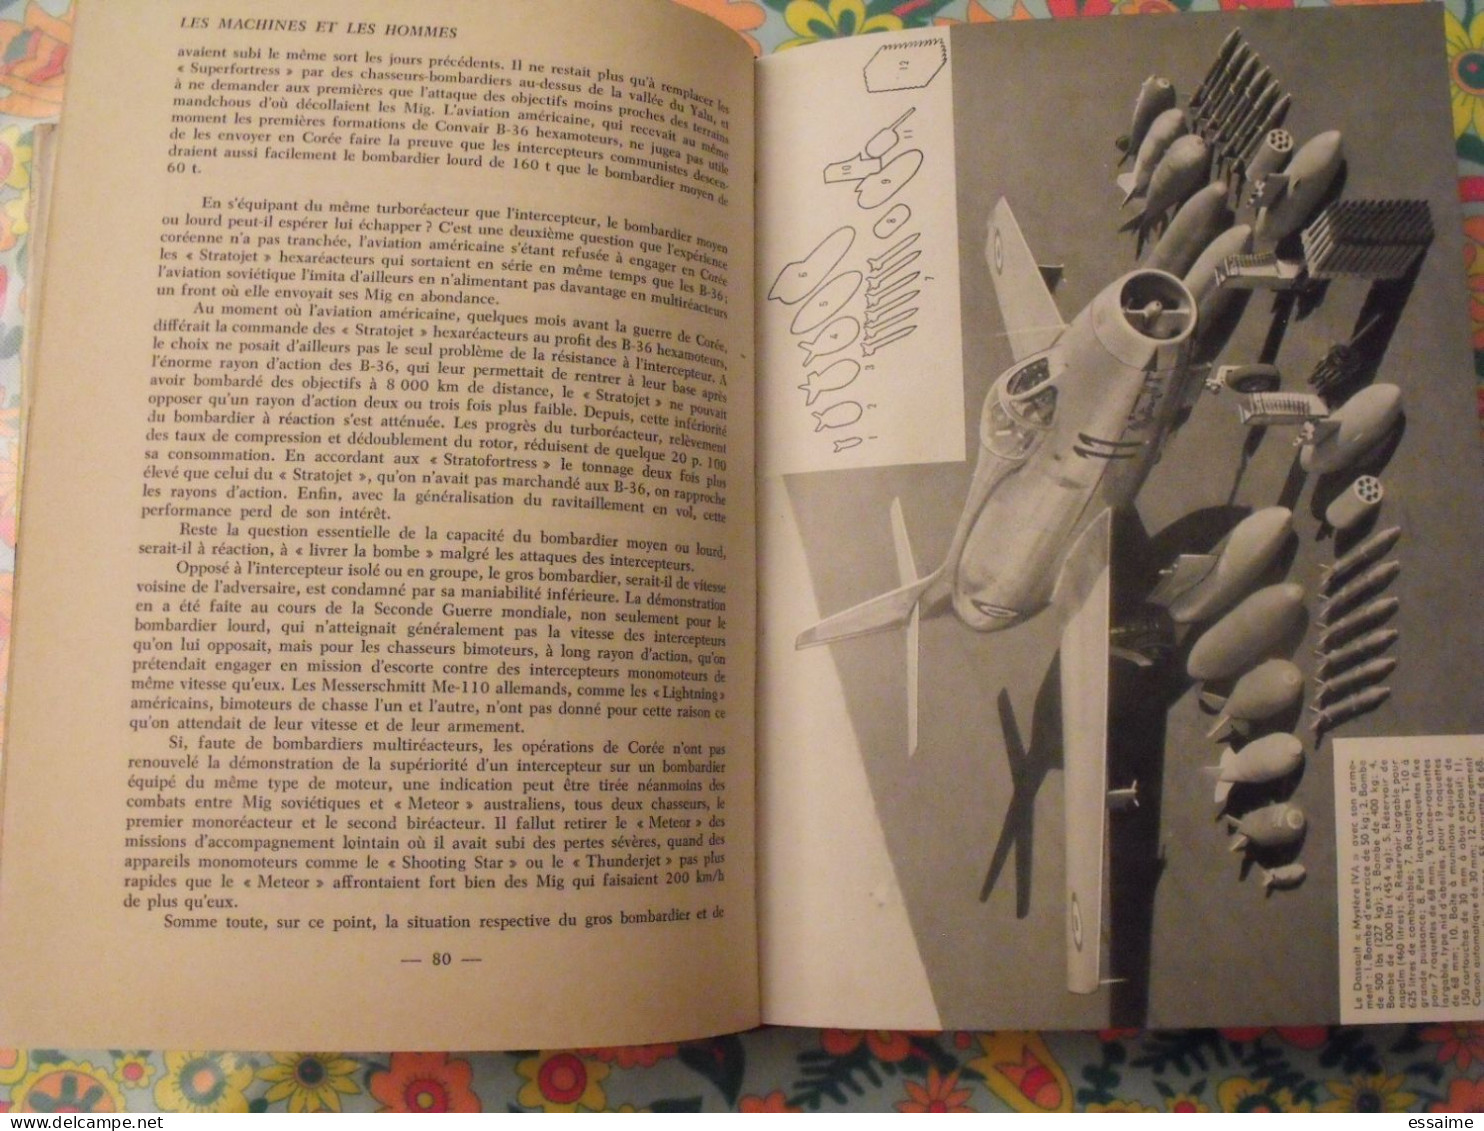 l'aviation nouvelle. camille rougeron. illustrations de jean Lattapy. Larousse 1957